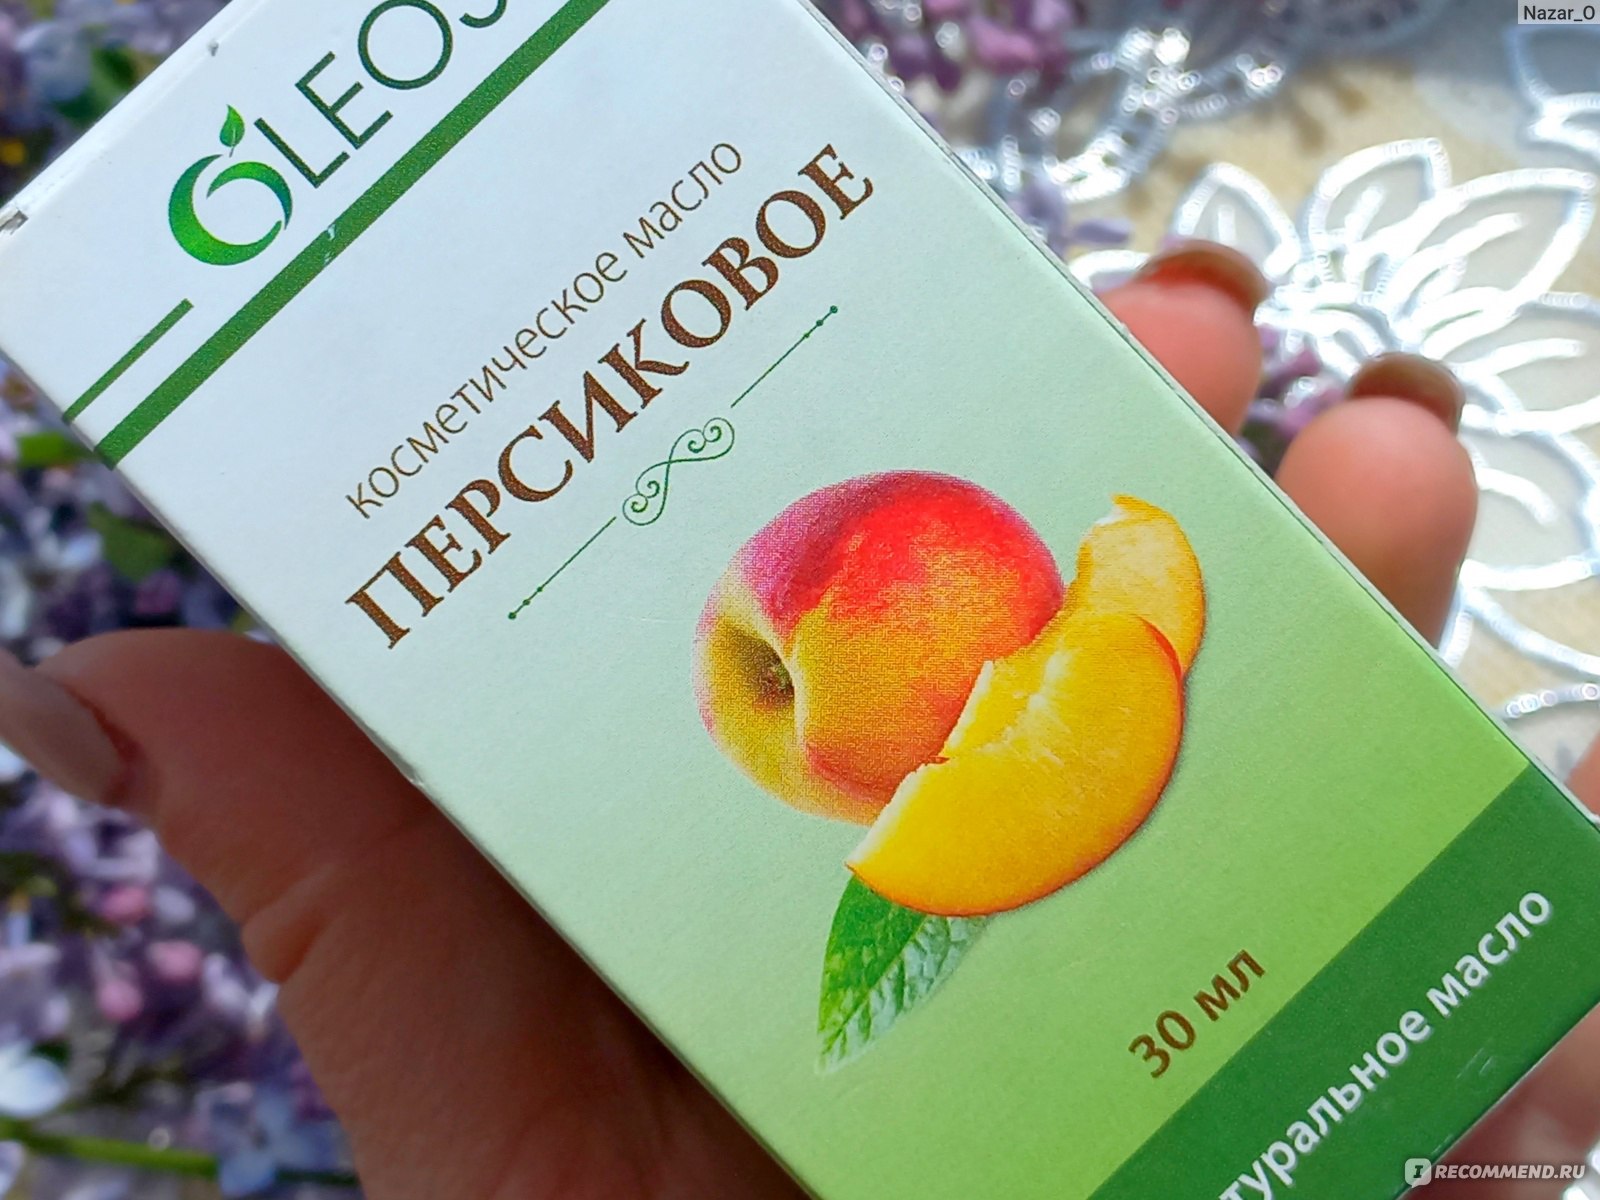 Олеос персиковое масло